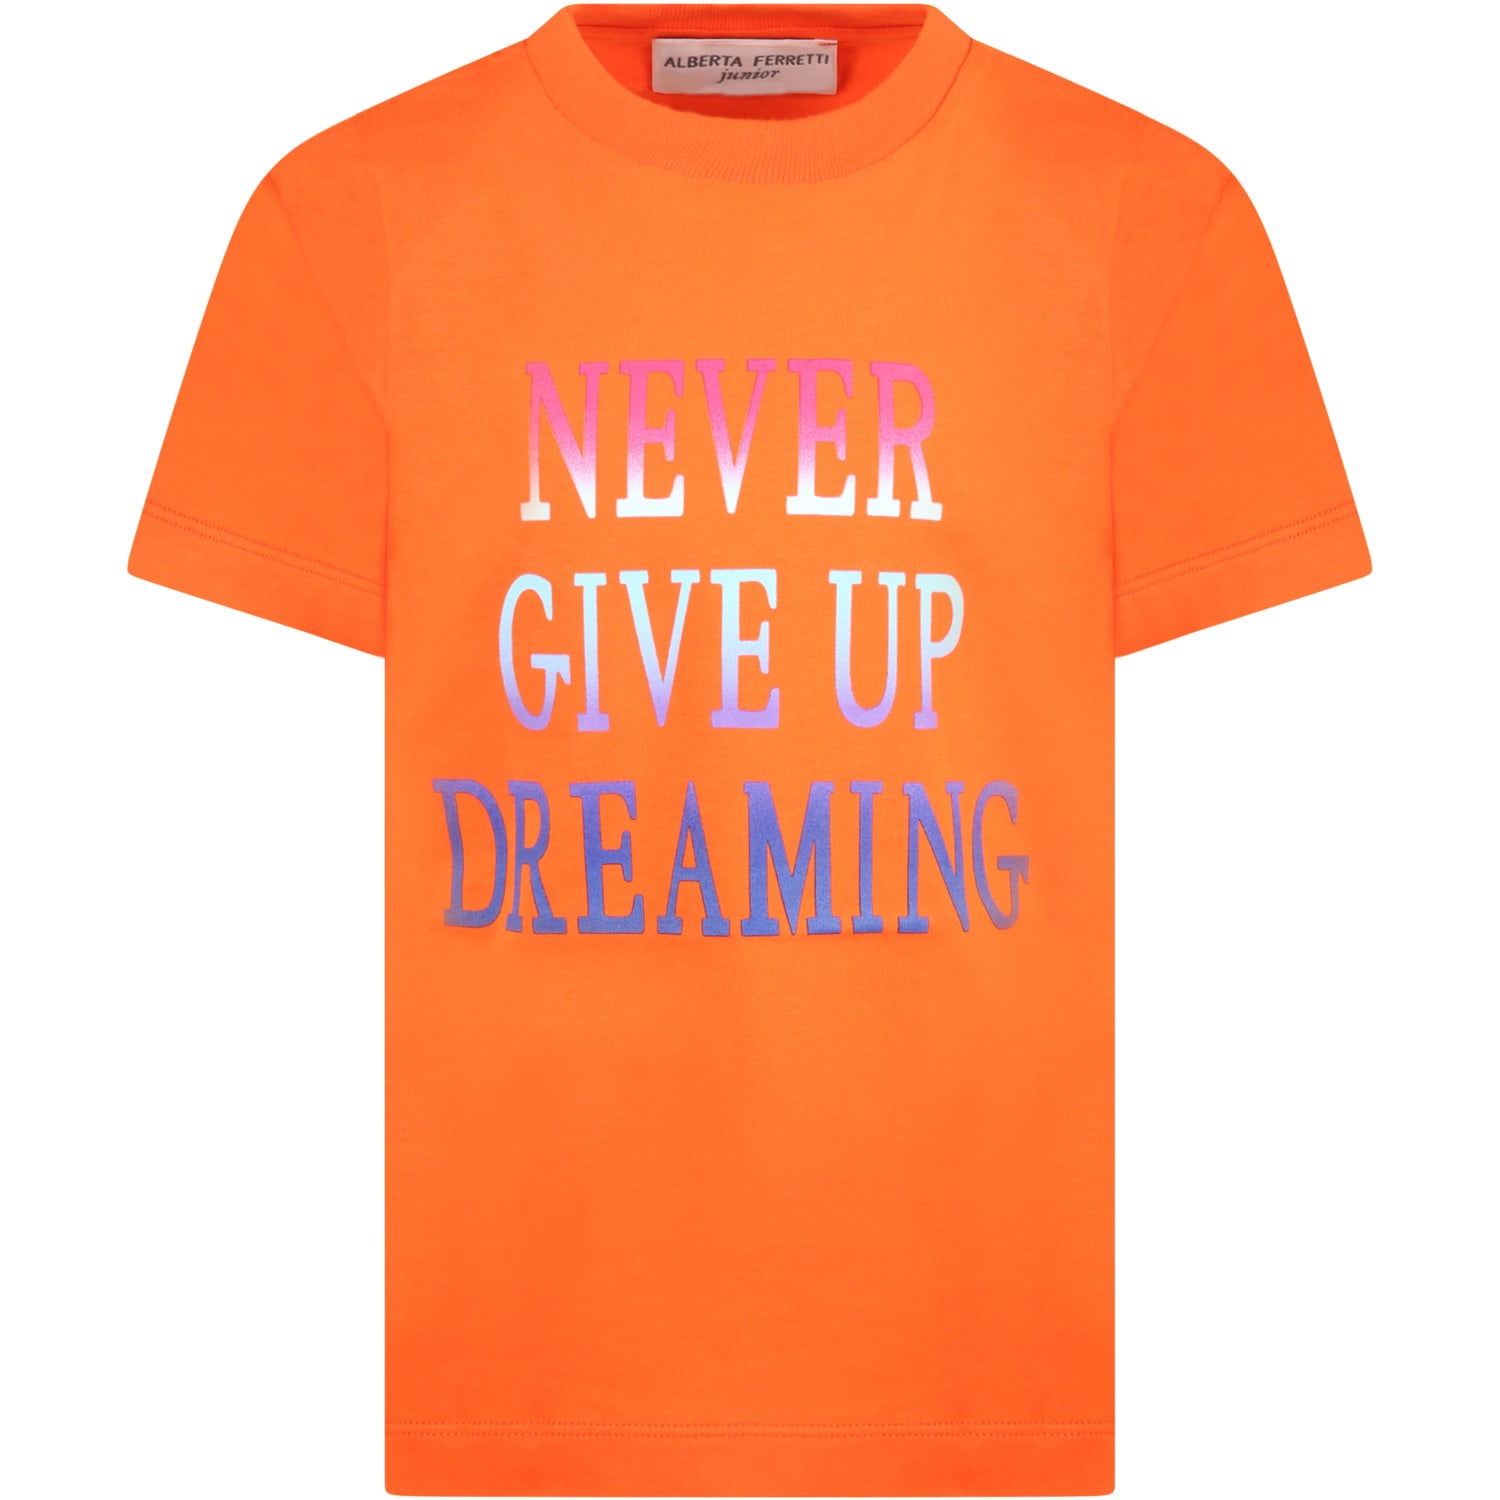 Alberta Ferretti Orange T-shirt For Girl With Multicolor Writing